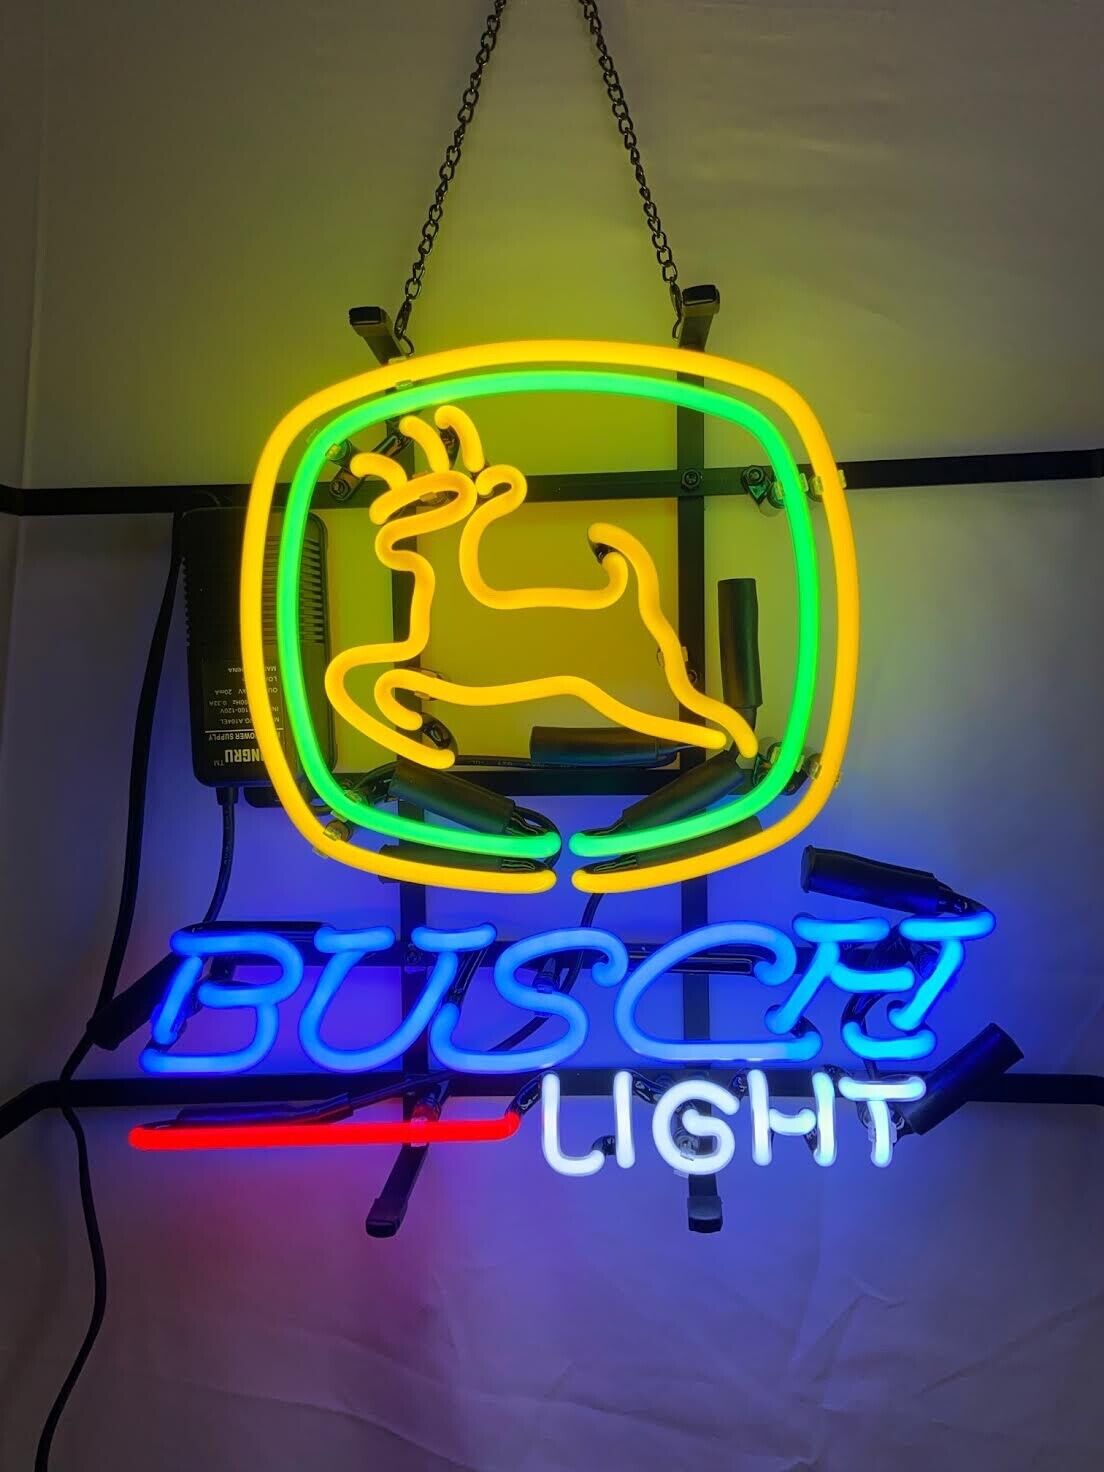 New St. Louis Cardinals Busch Beer Real Glass Neon Sign Bar Light Home  Decor